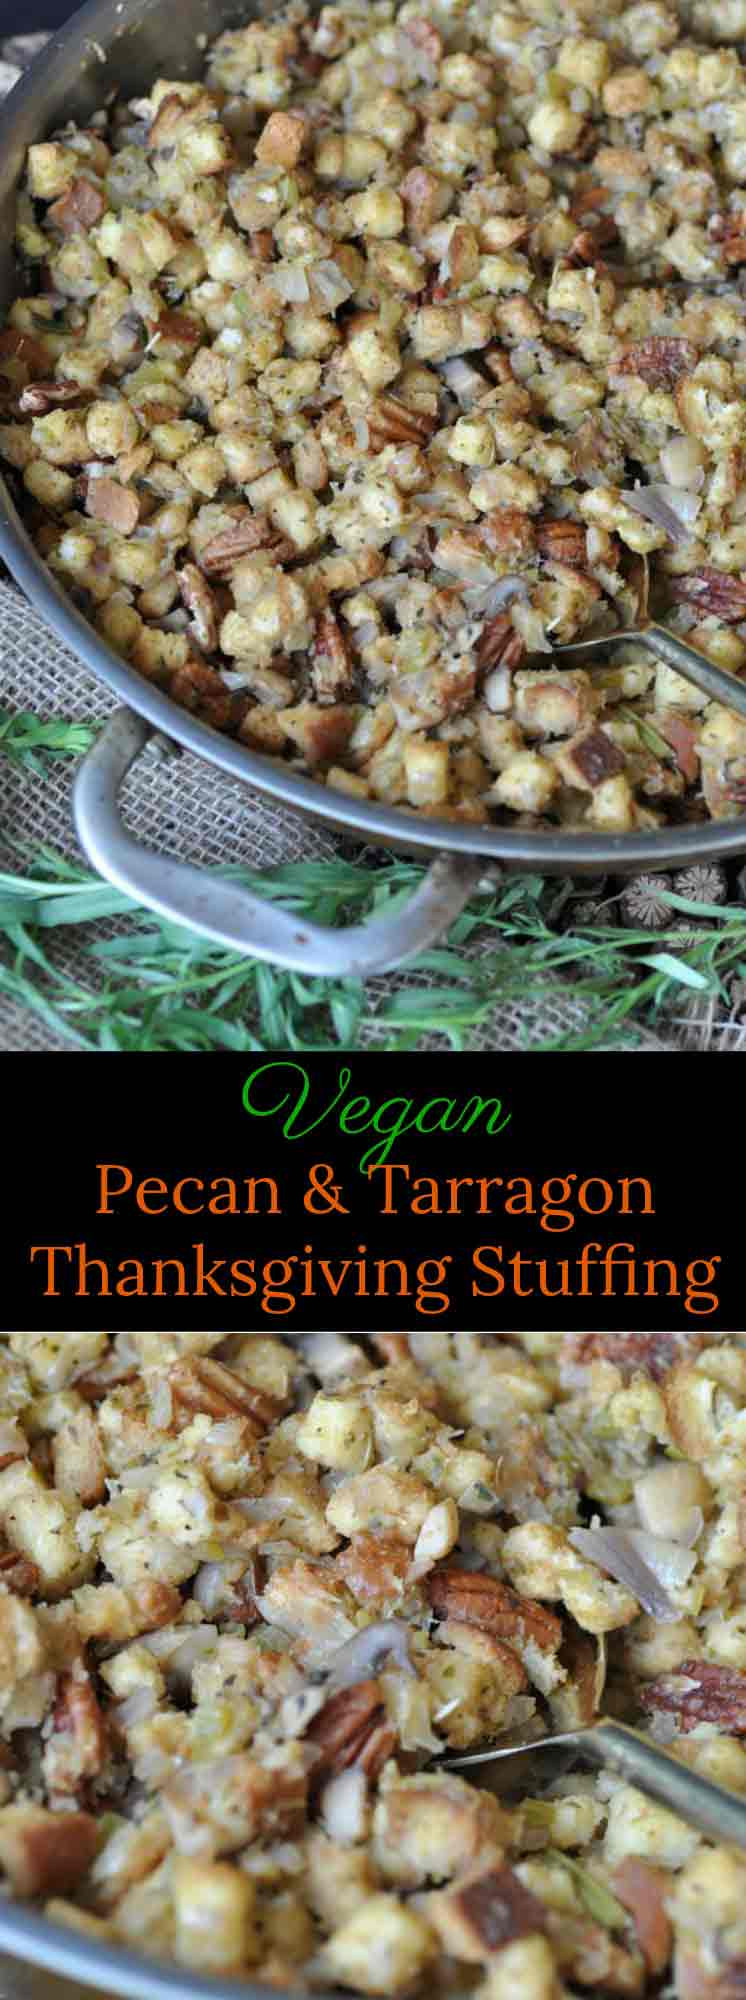 Vegan Stuffing For Thanksgiving
 Vegan Pecan & Tarragon Thanksgiving Stuffing Veganosity